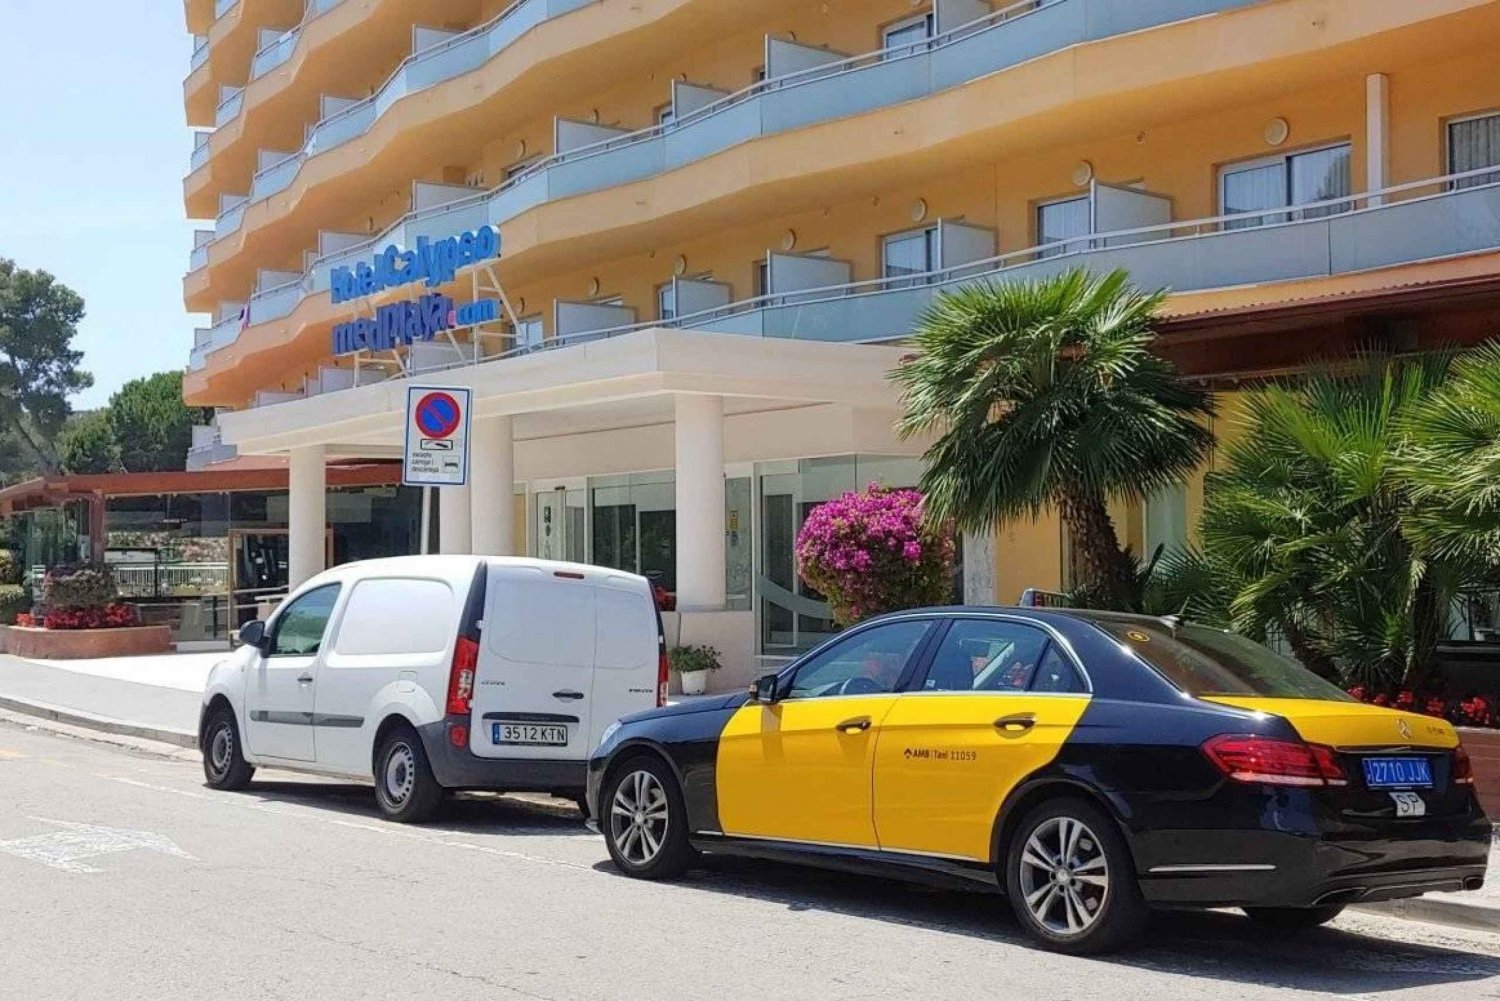 Aeroporto de Barcelona: Reserve um traslado de táxi para seu hotel